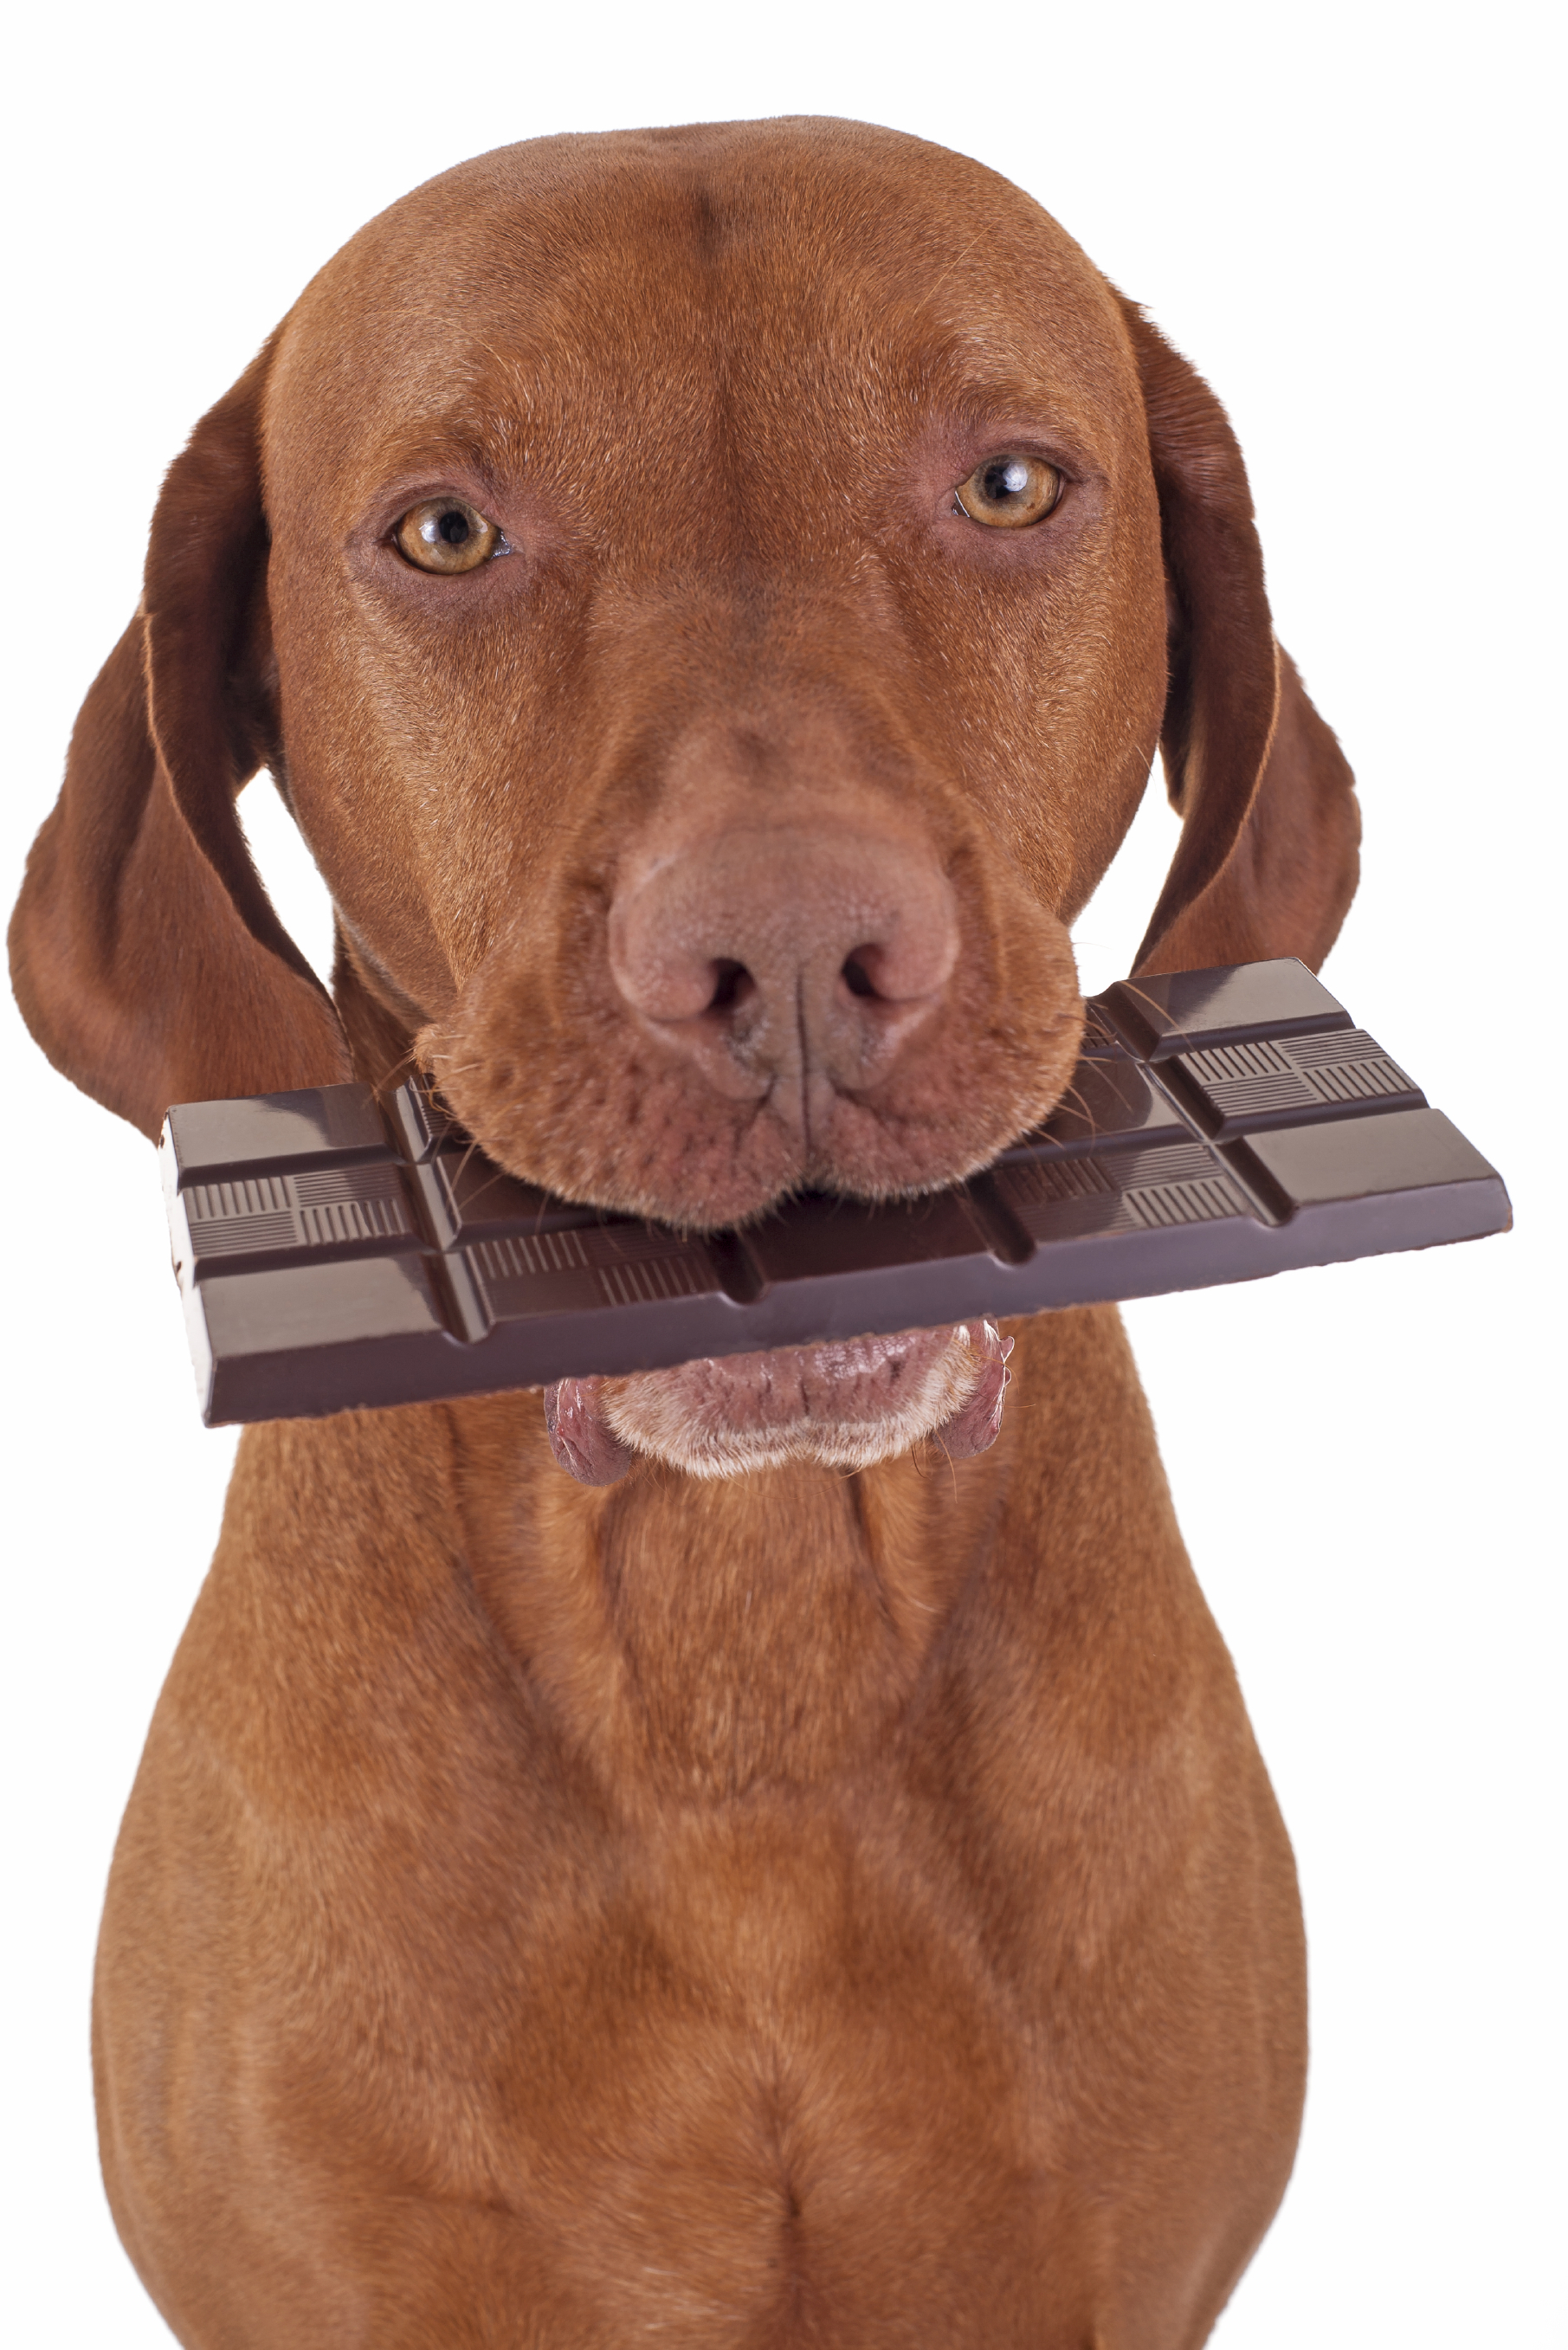 hond eet chocolade giftig